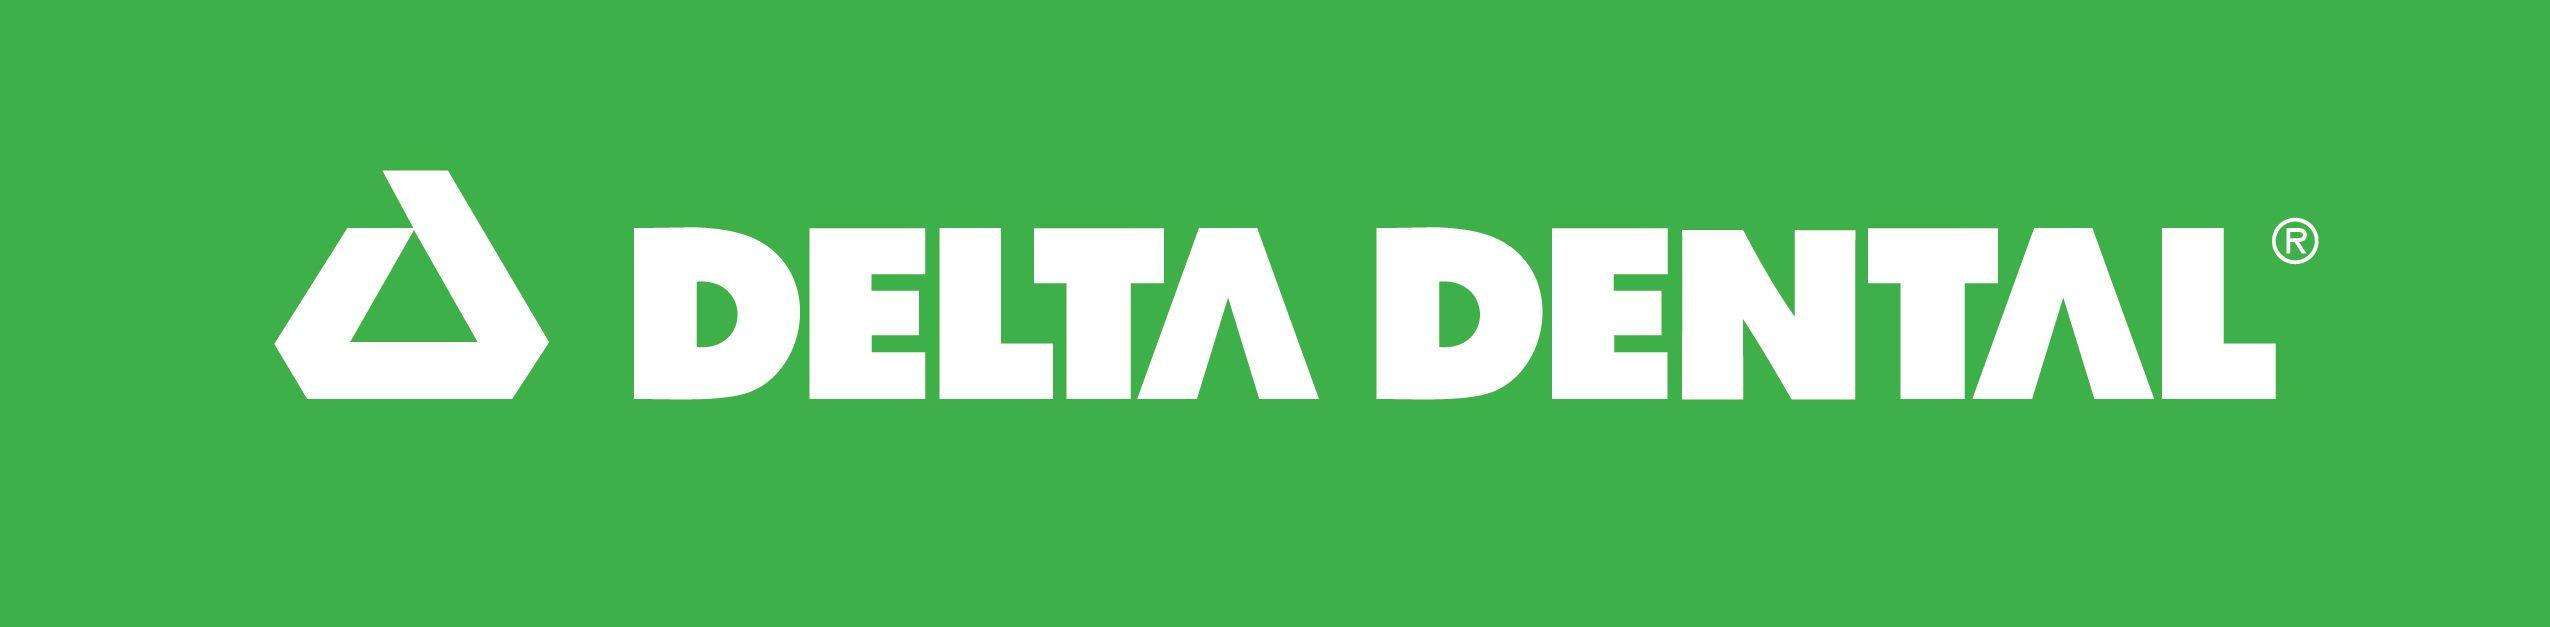 Delta Dental Logo - Logo Usage | Delta Dental